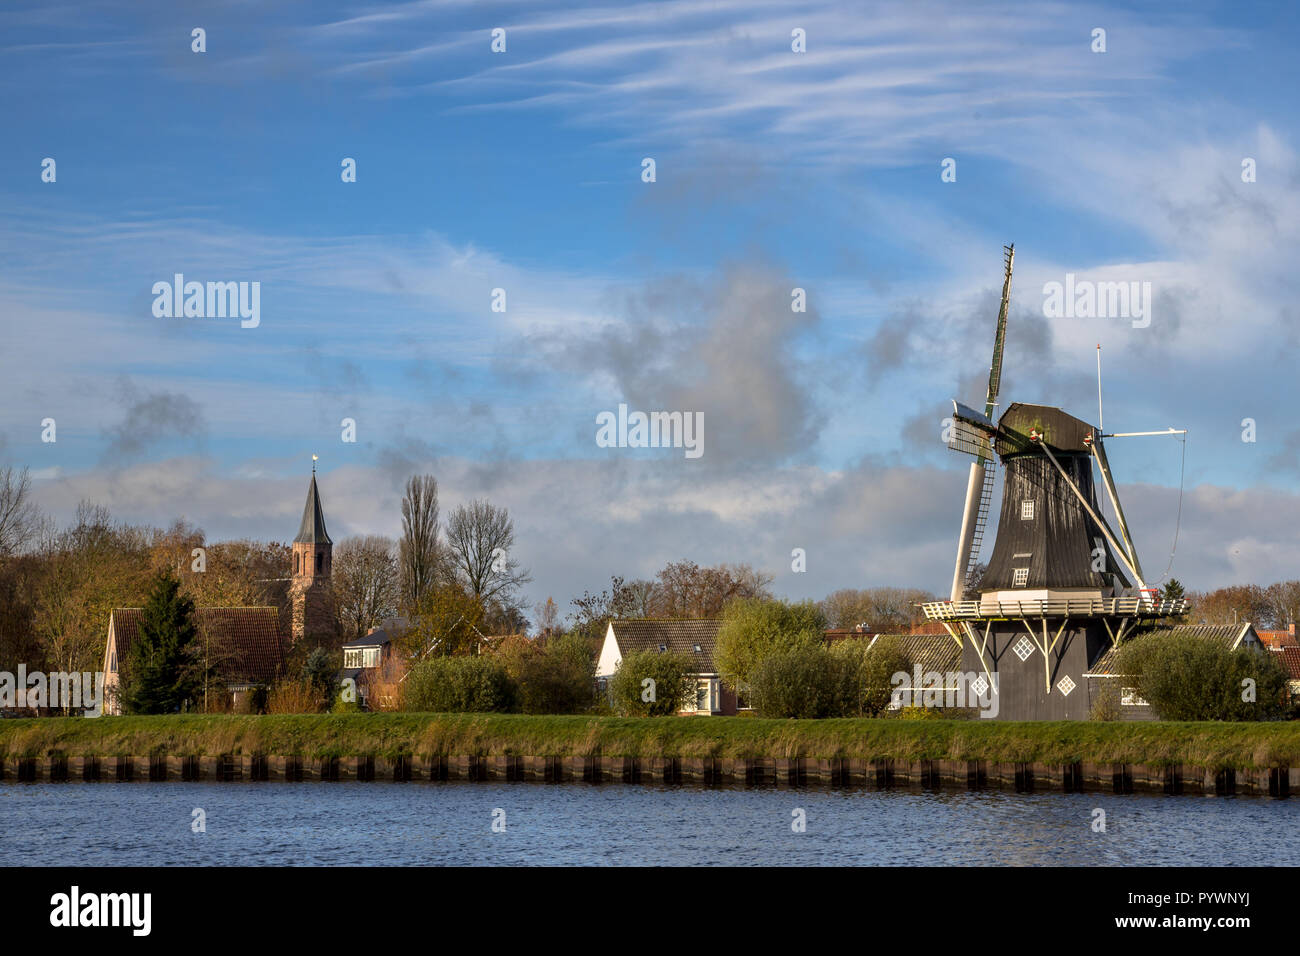 Voir l'historique du moulin à vent en bois et chirch dans le petit village de Woltersum à partir de l'eau dans la province de Groningue, Pays-Bas Banque D'Images